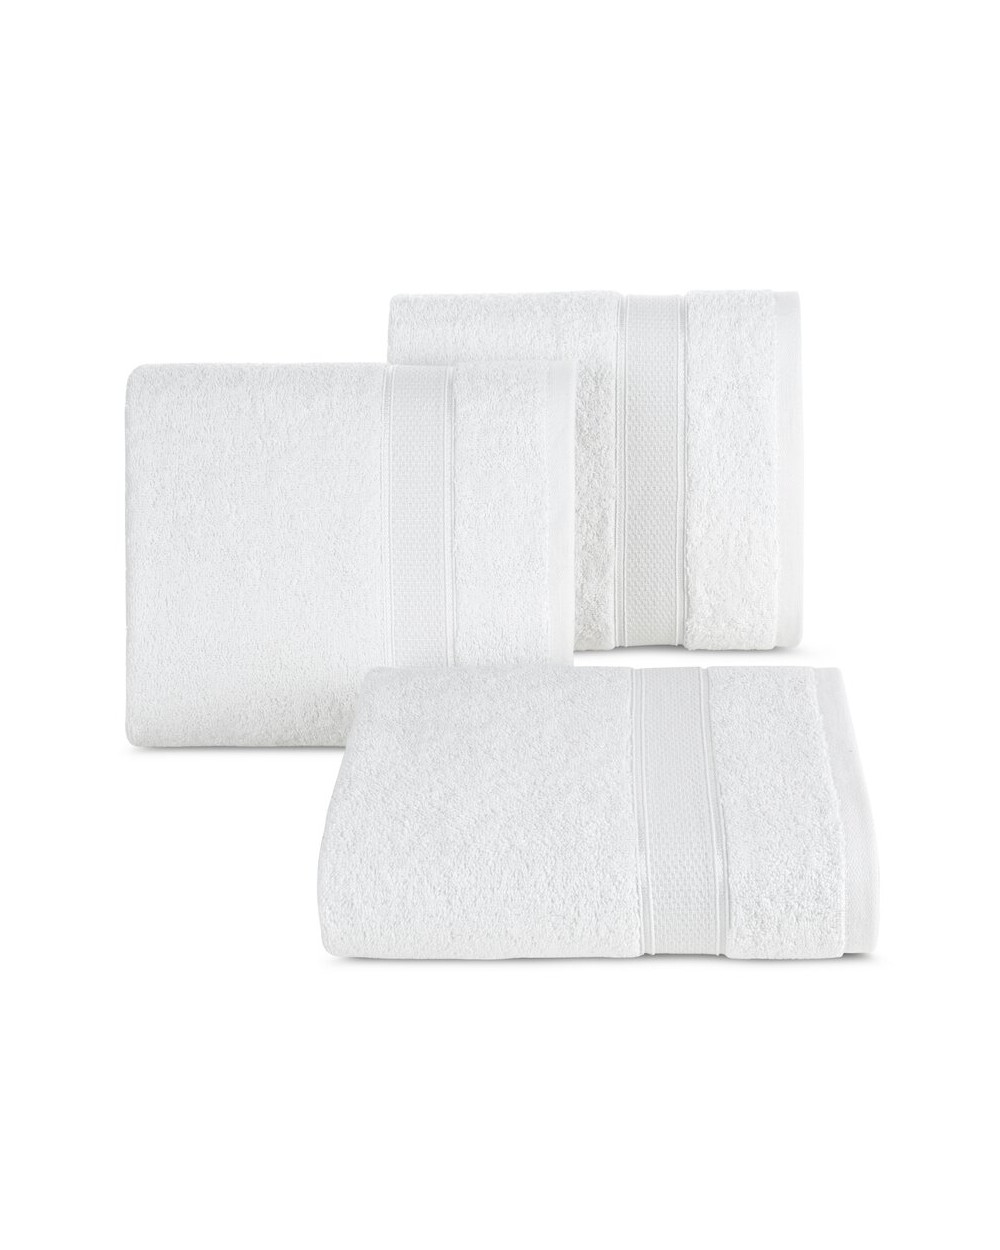 Ręcznik bawełna 50x90 Liana biały Eurofirany 